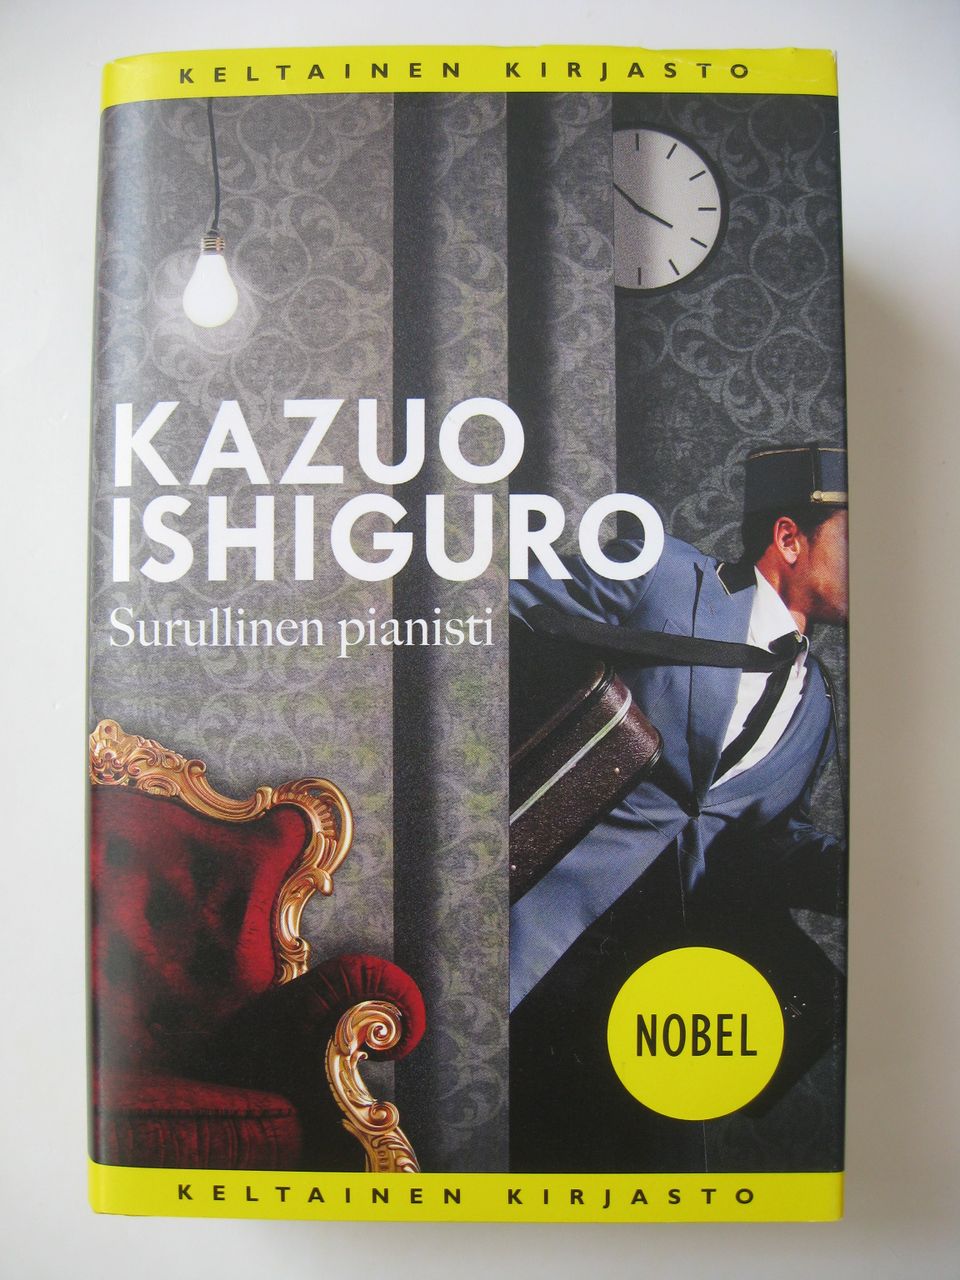 Kazuo Ishiguro, Surullinen pianisti